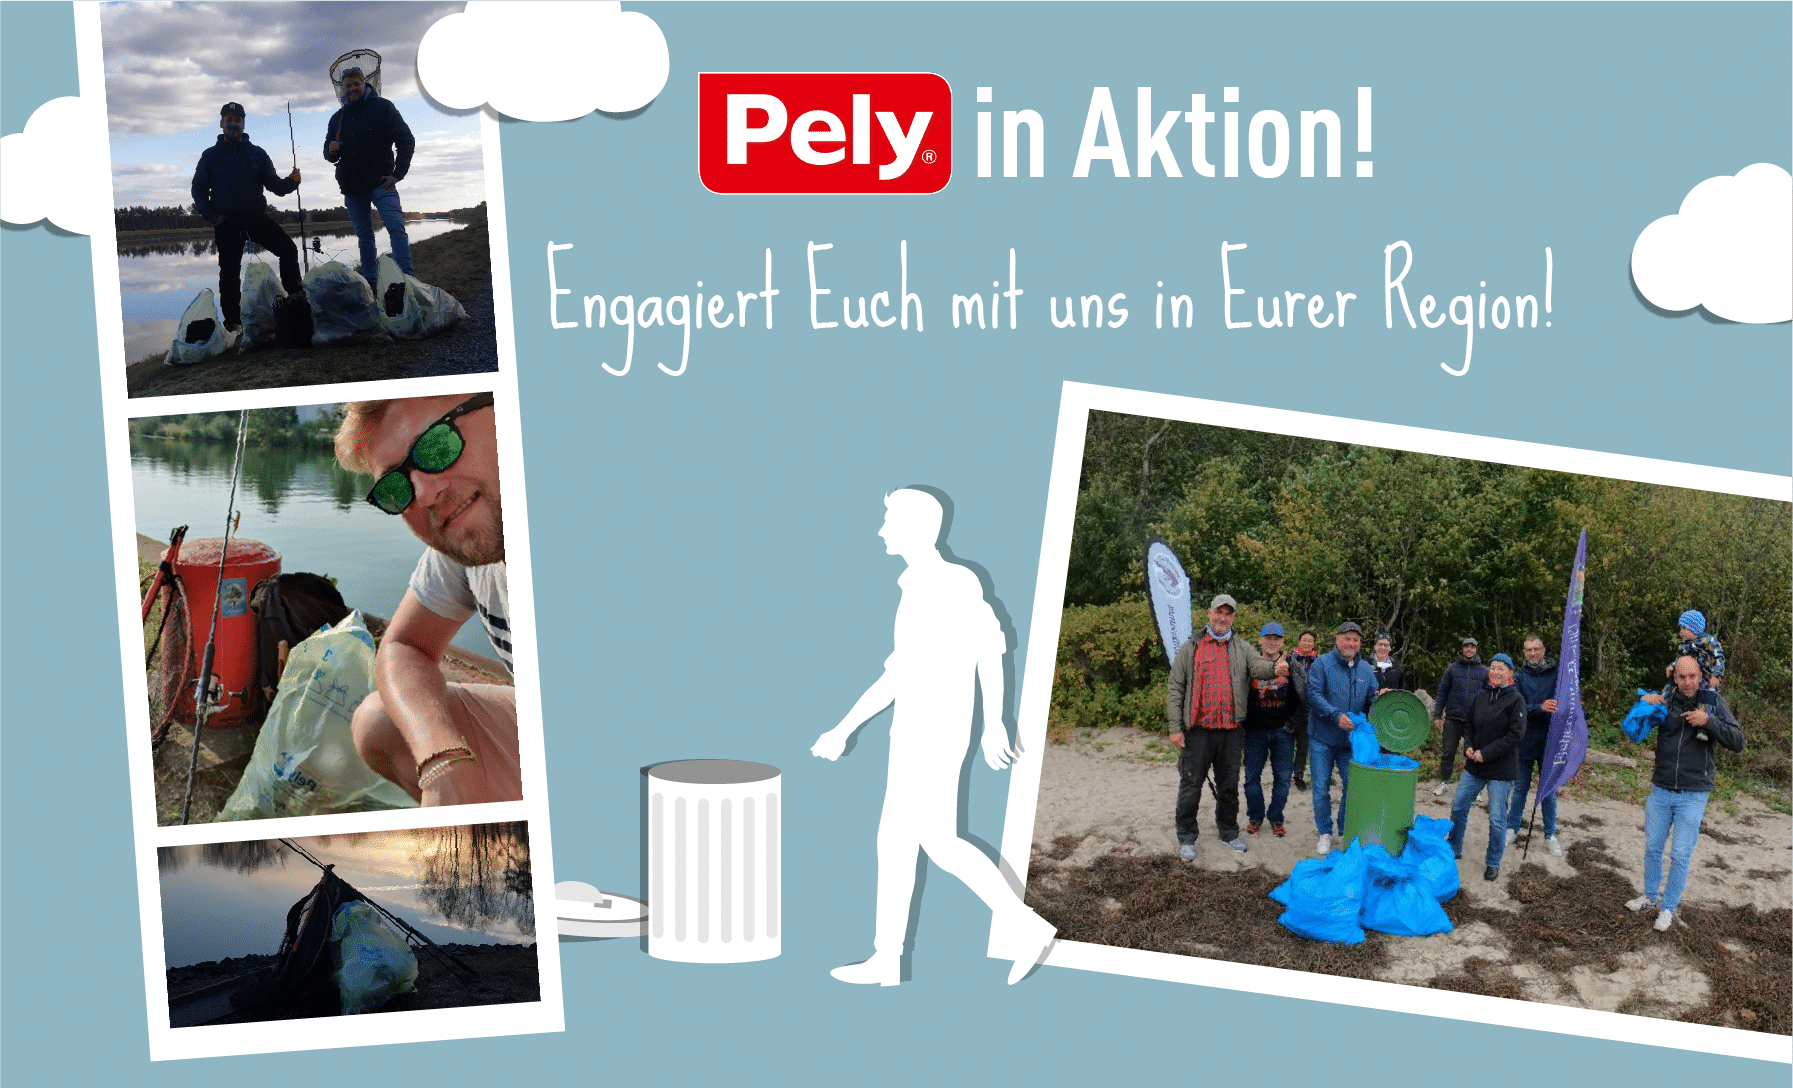 PELY® in Aktion – engagierte Alltagshelden im Einsatz für die Umwelt 1_pely.de